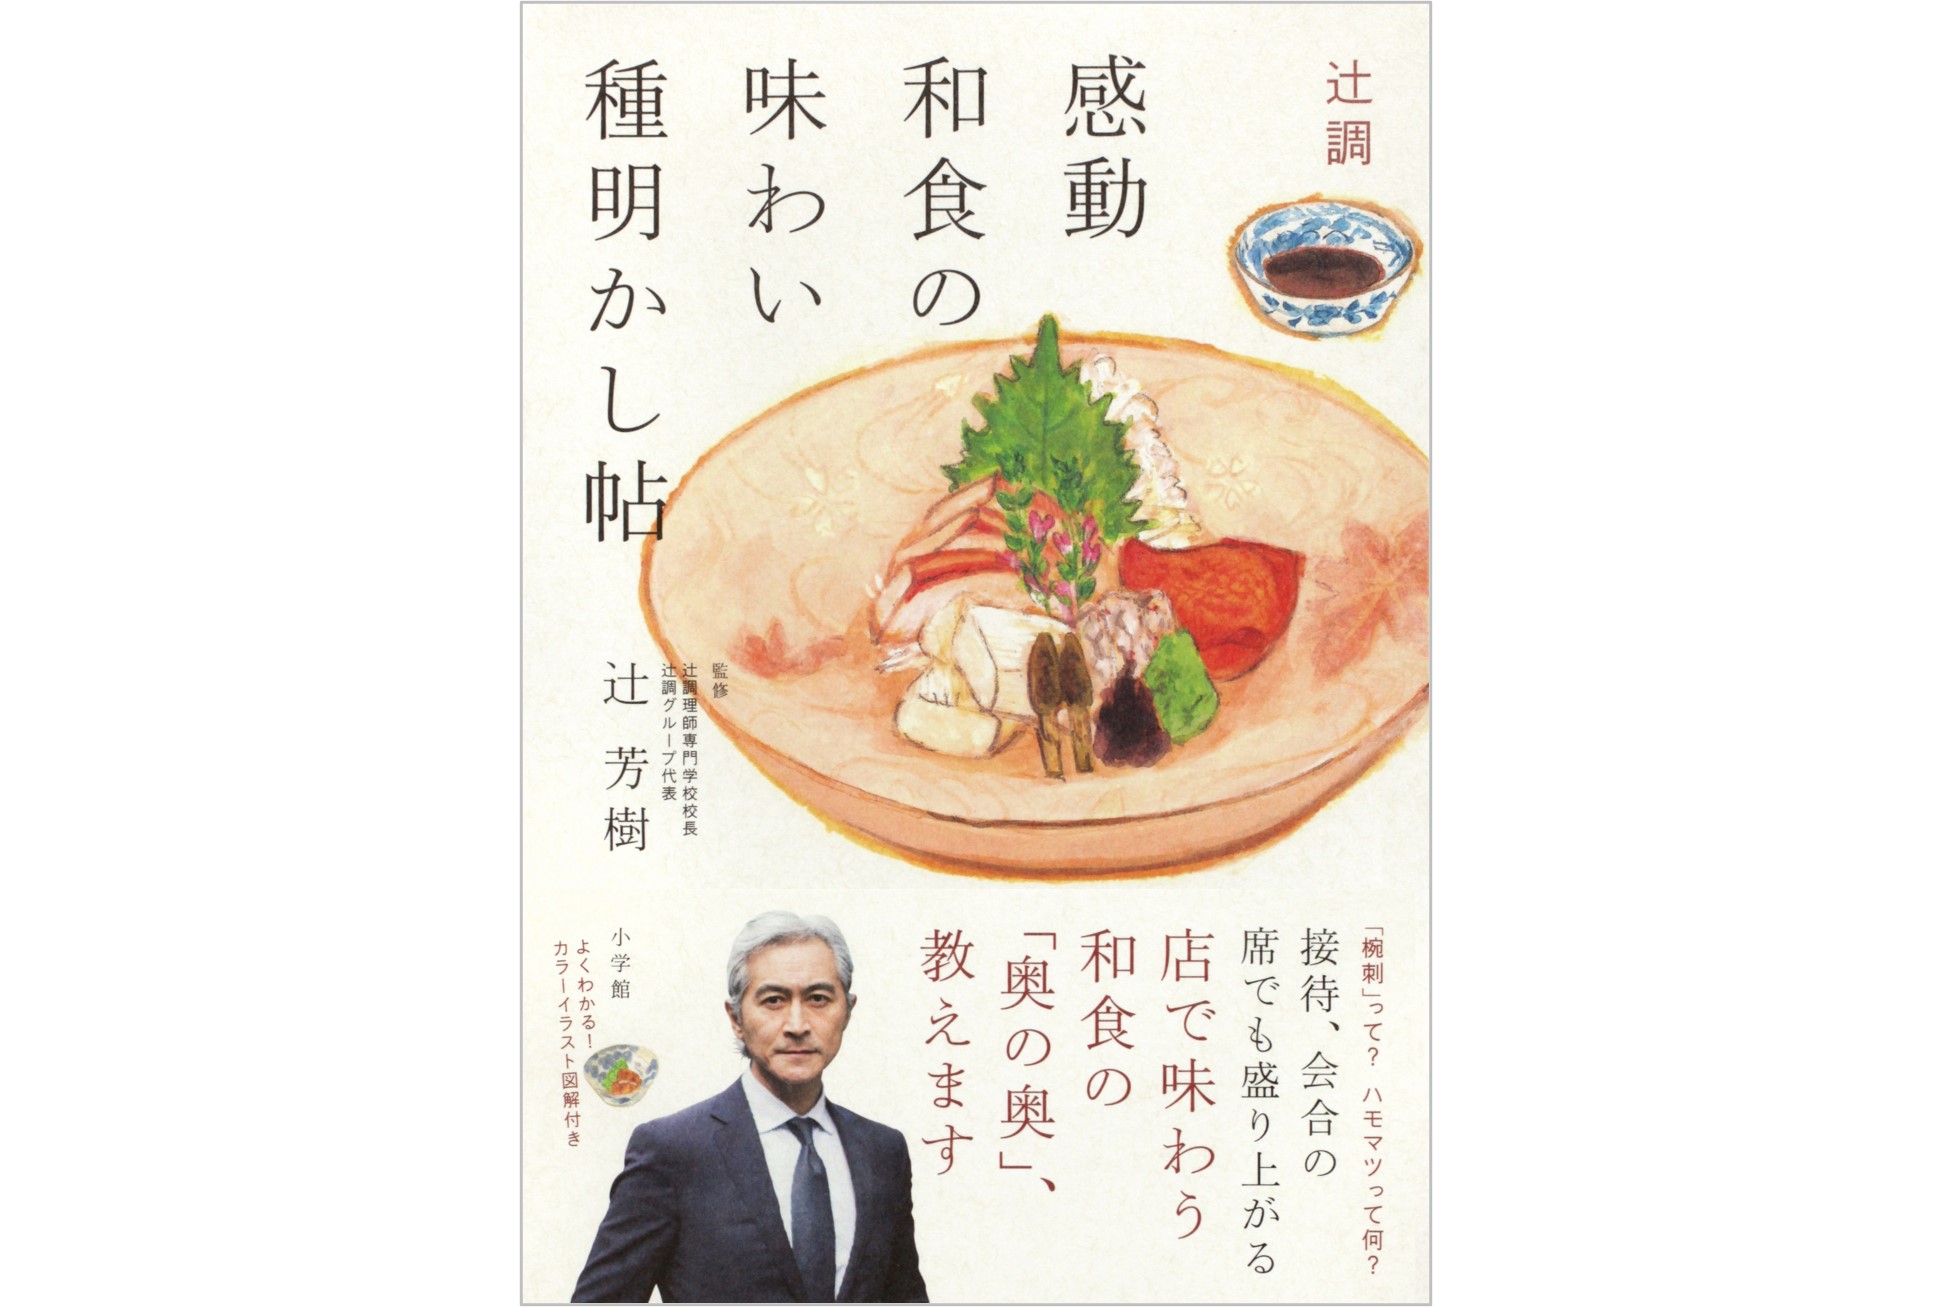 辻調理師専門学校 通信教育講座 日本料理 教材一式 - その他